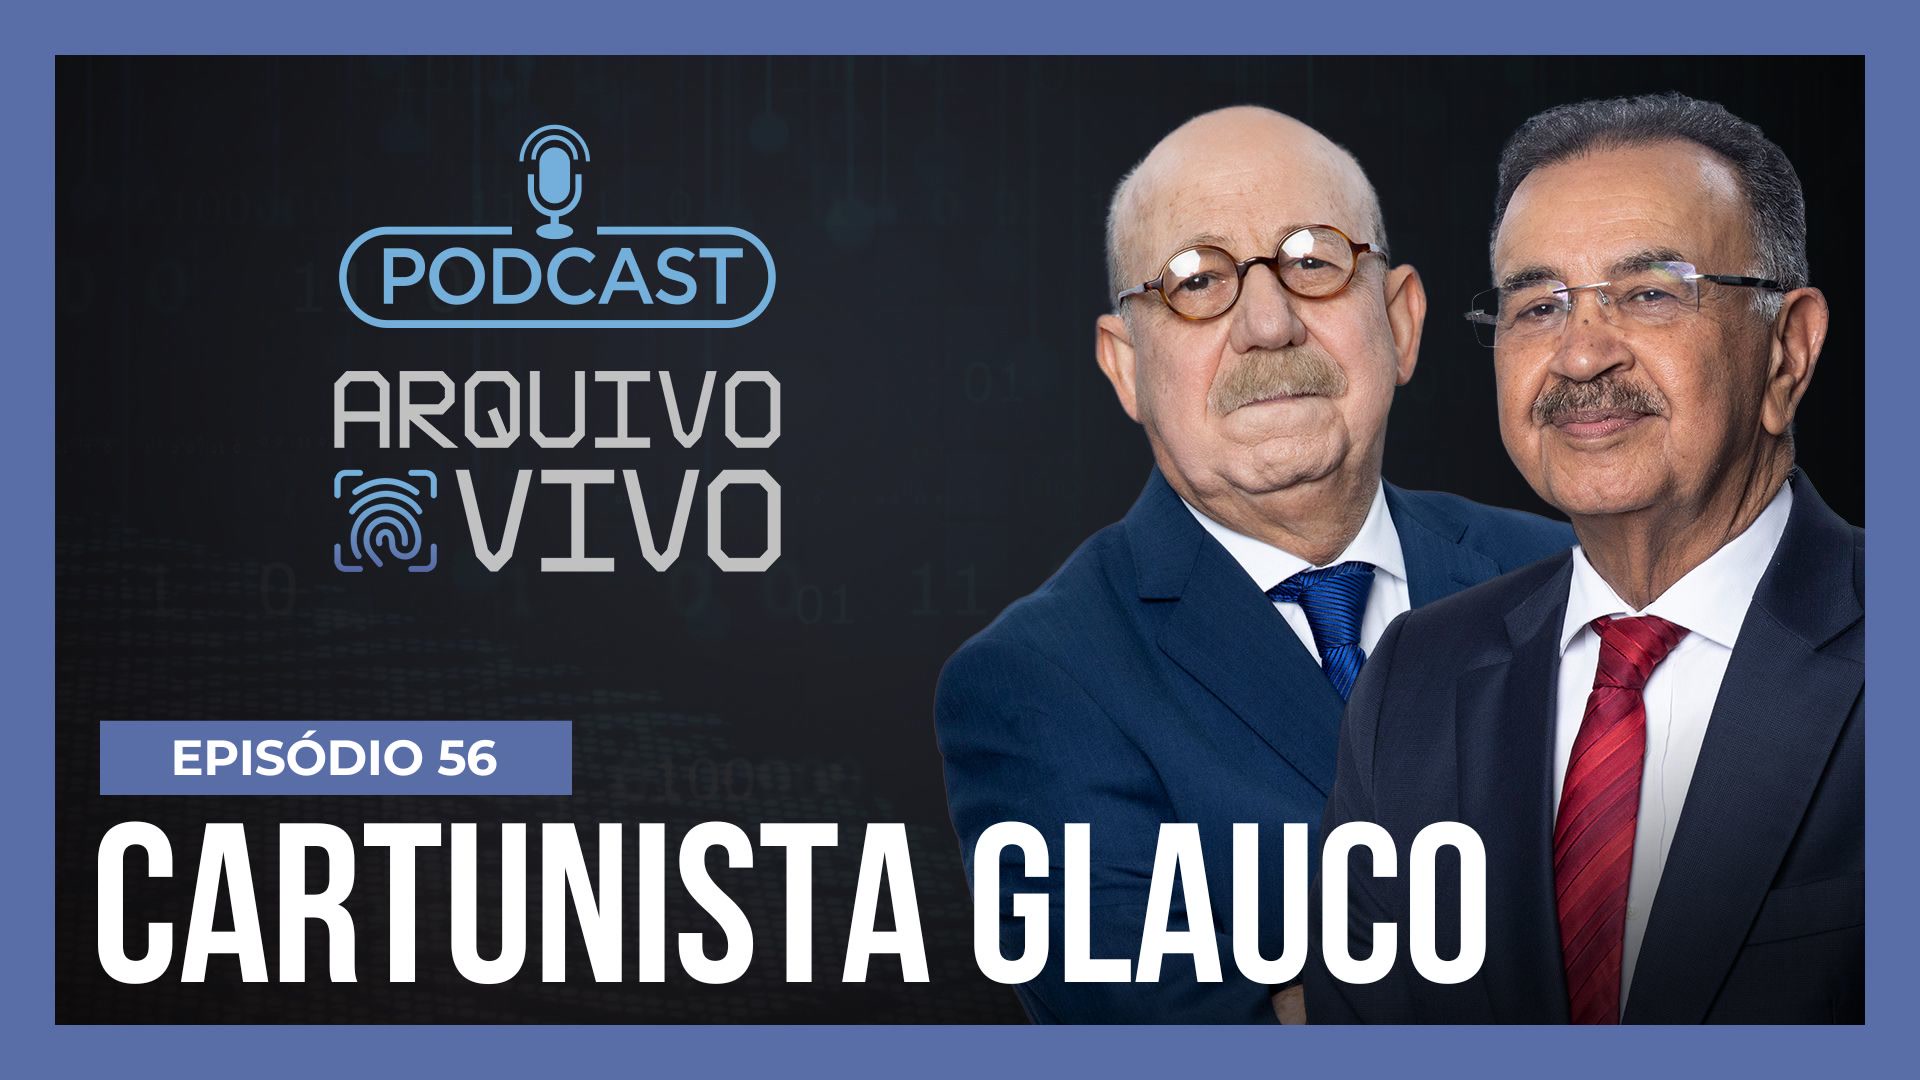 Vídeo: Podcast Arquivo Vivo : A morte do cartunista Glauco Villas Boas e do filho Raoni | Ep. 56